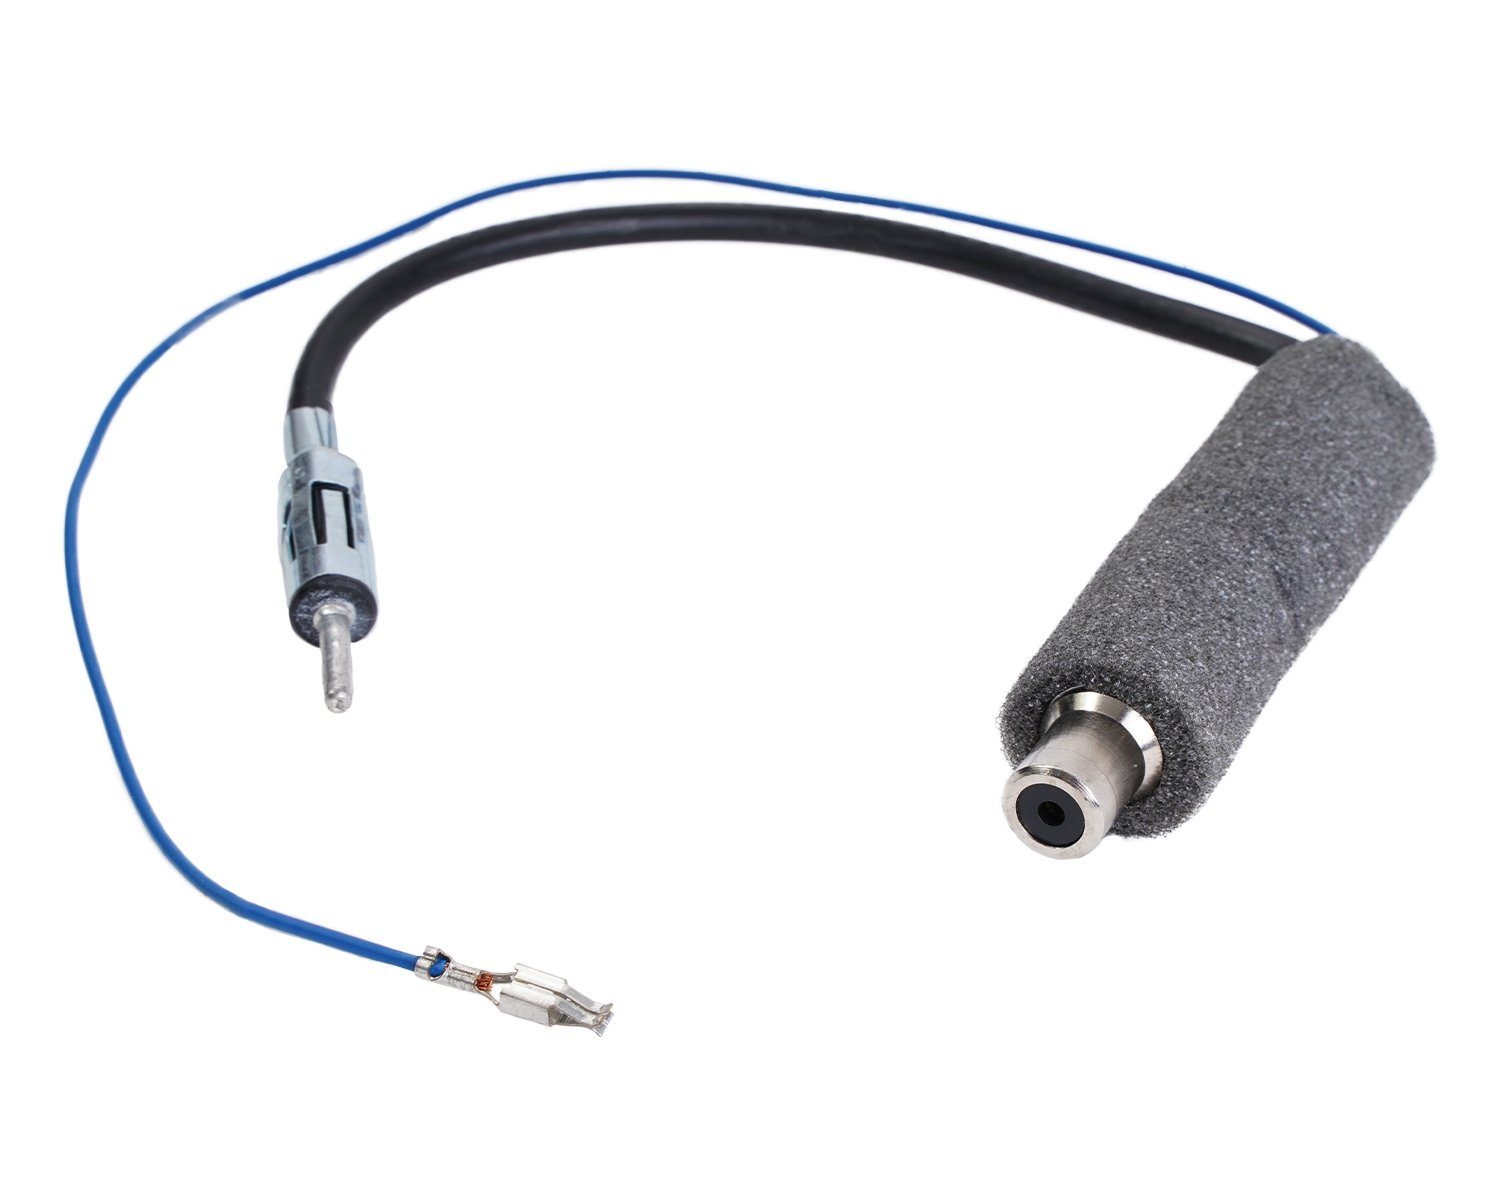 Kfz Auto-Radio Antenne-Adapter DIN-Kupplung Buchse ISO-Stecker